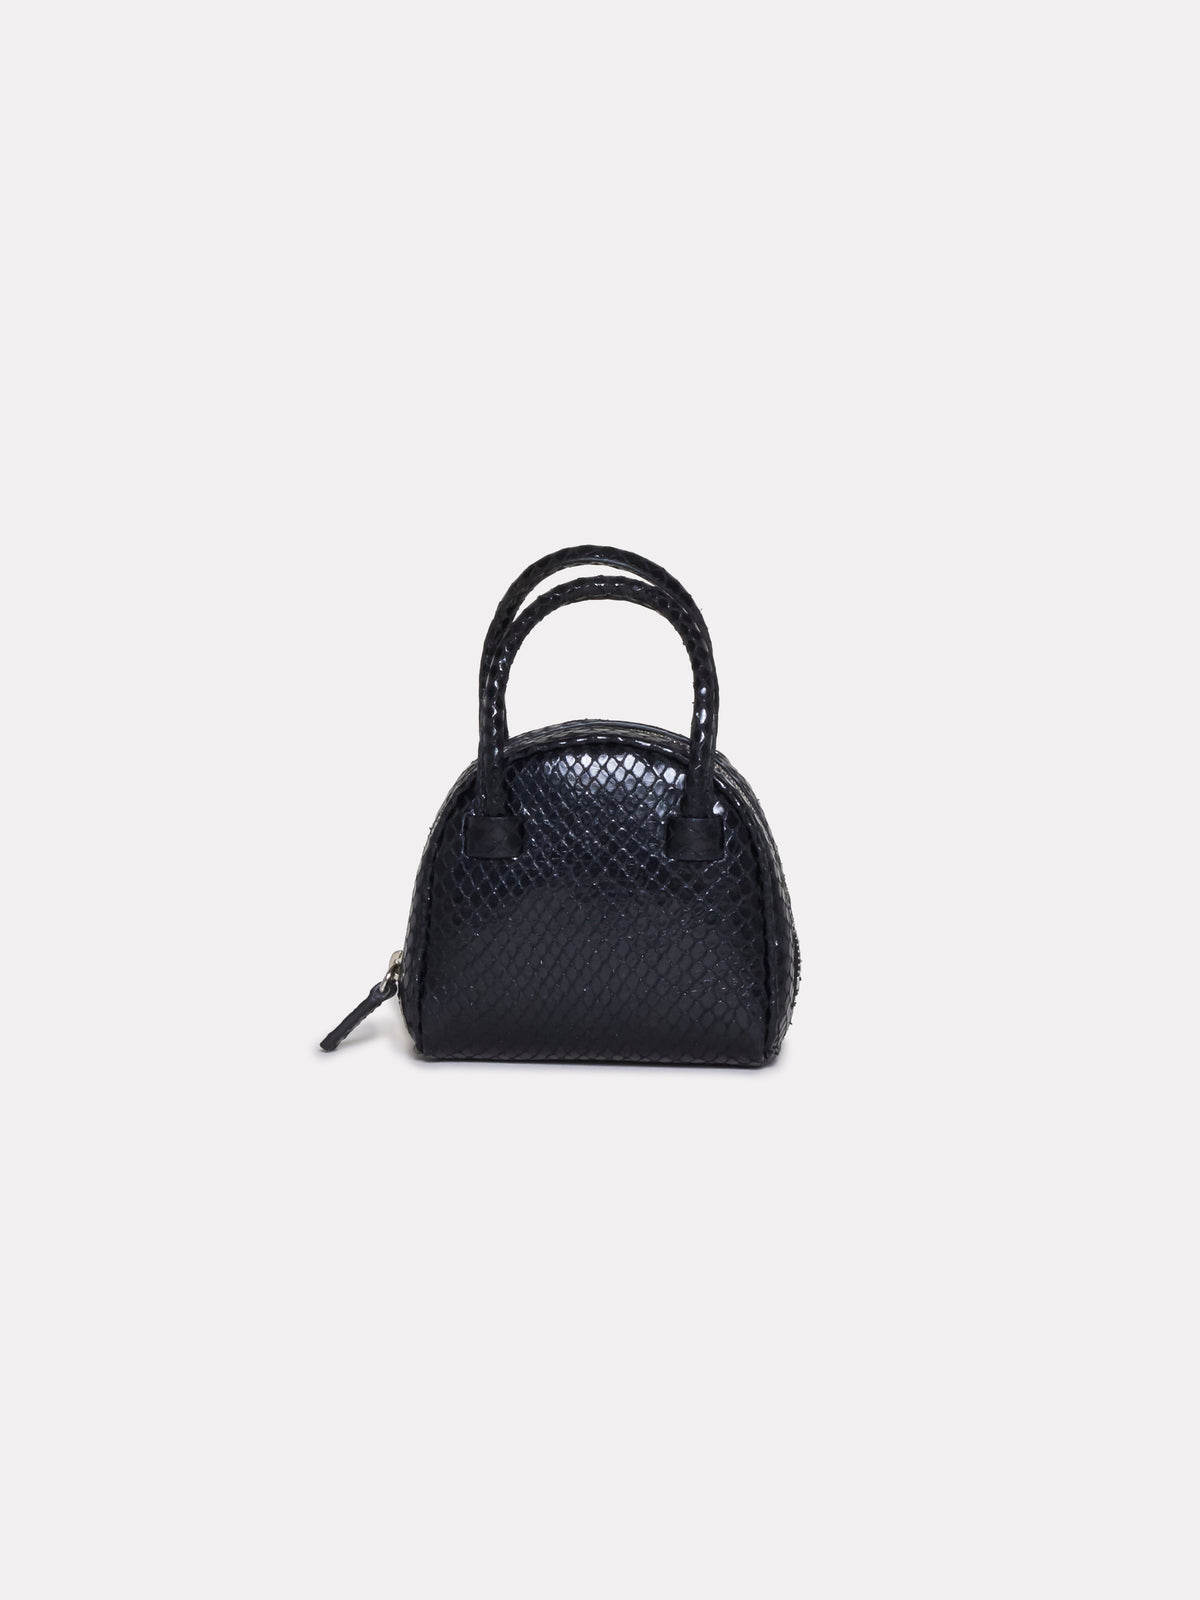 Mini Bag Black Python